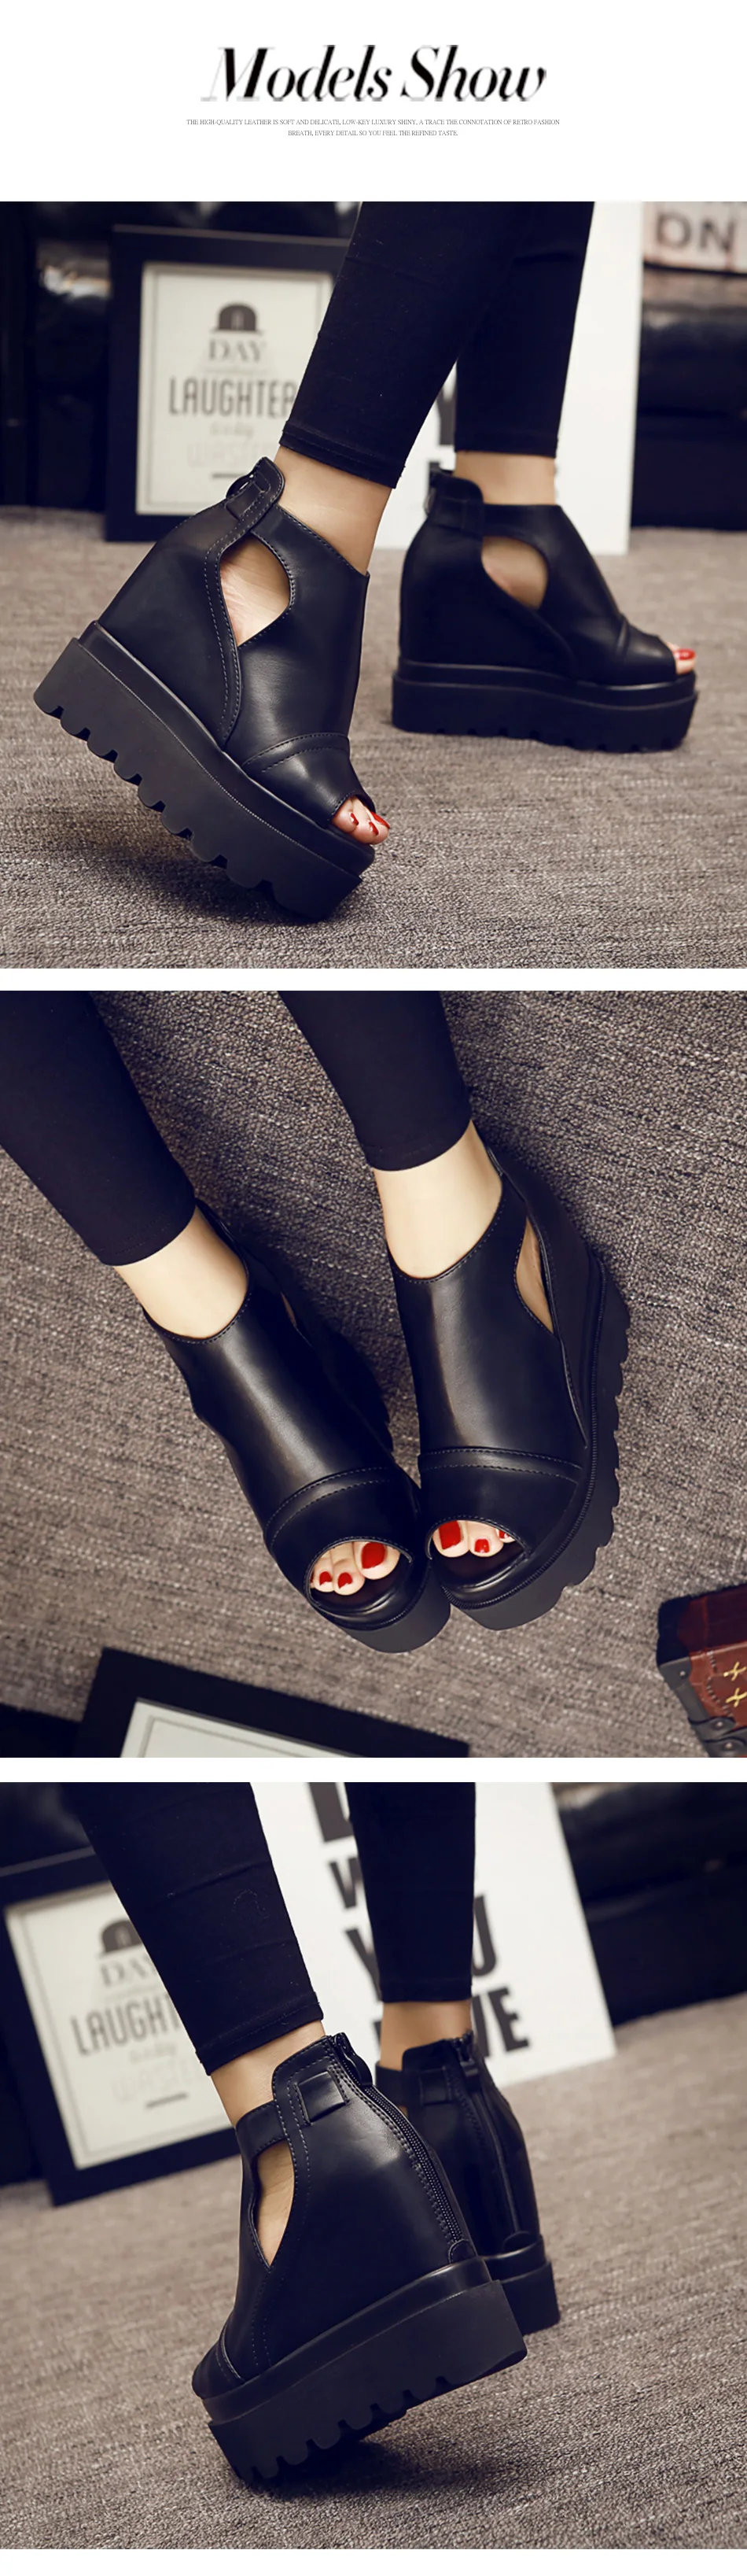 Gdgydh/весенние женские туфли-лодочки с открытым носком, модные туфли на высоком толстом каблуке на молнии, женская летняя обувь на платформе, Прямая поставка